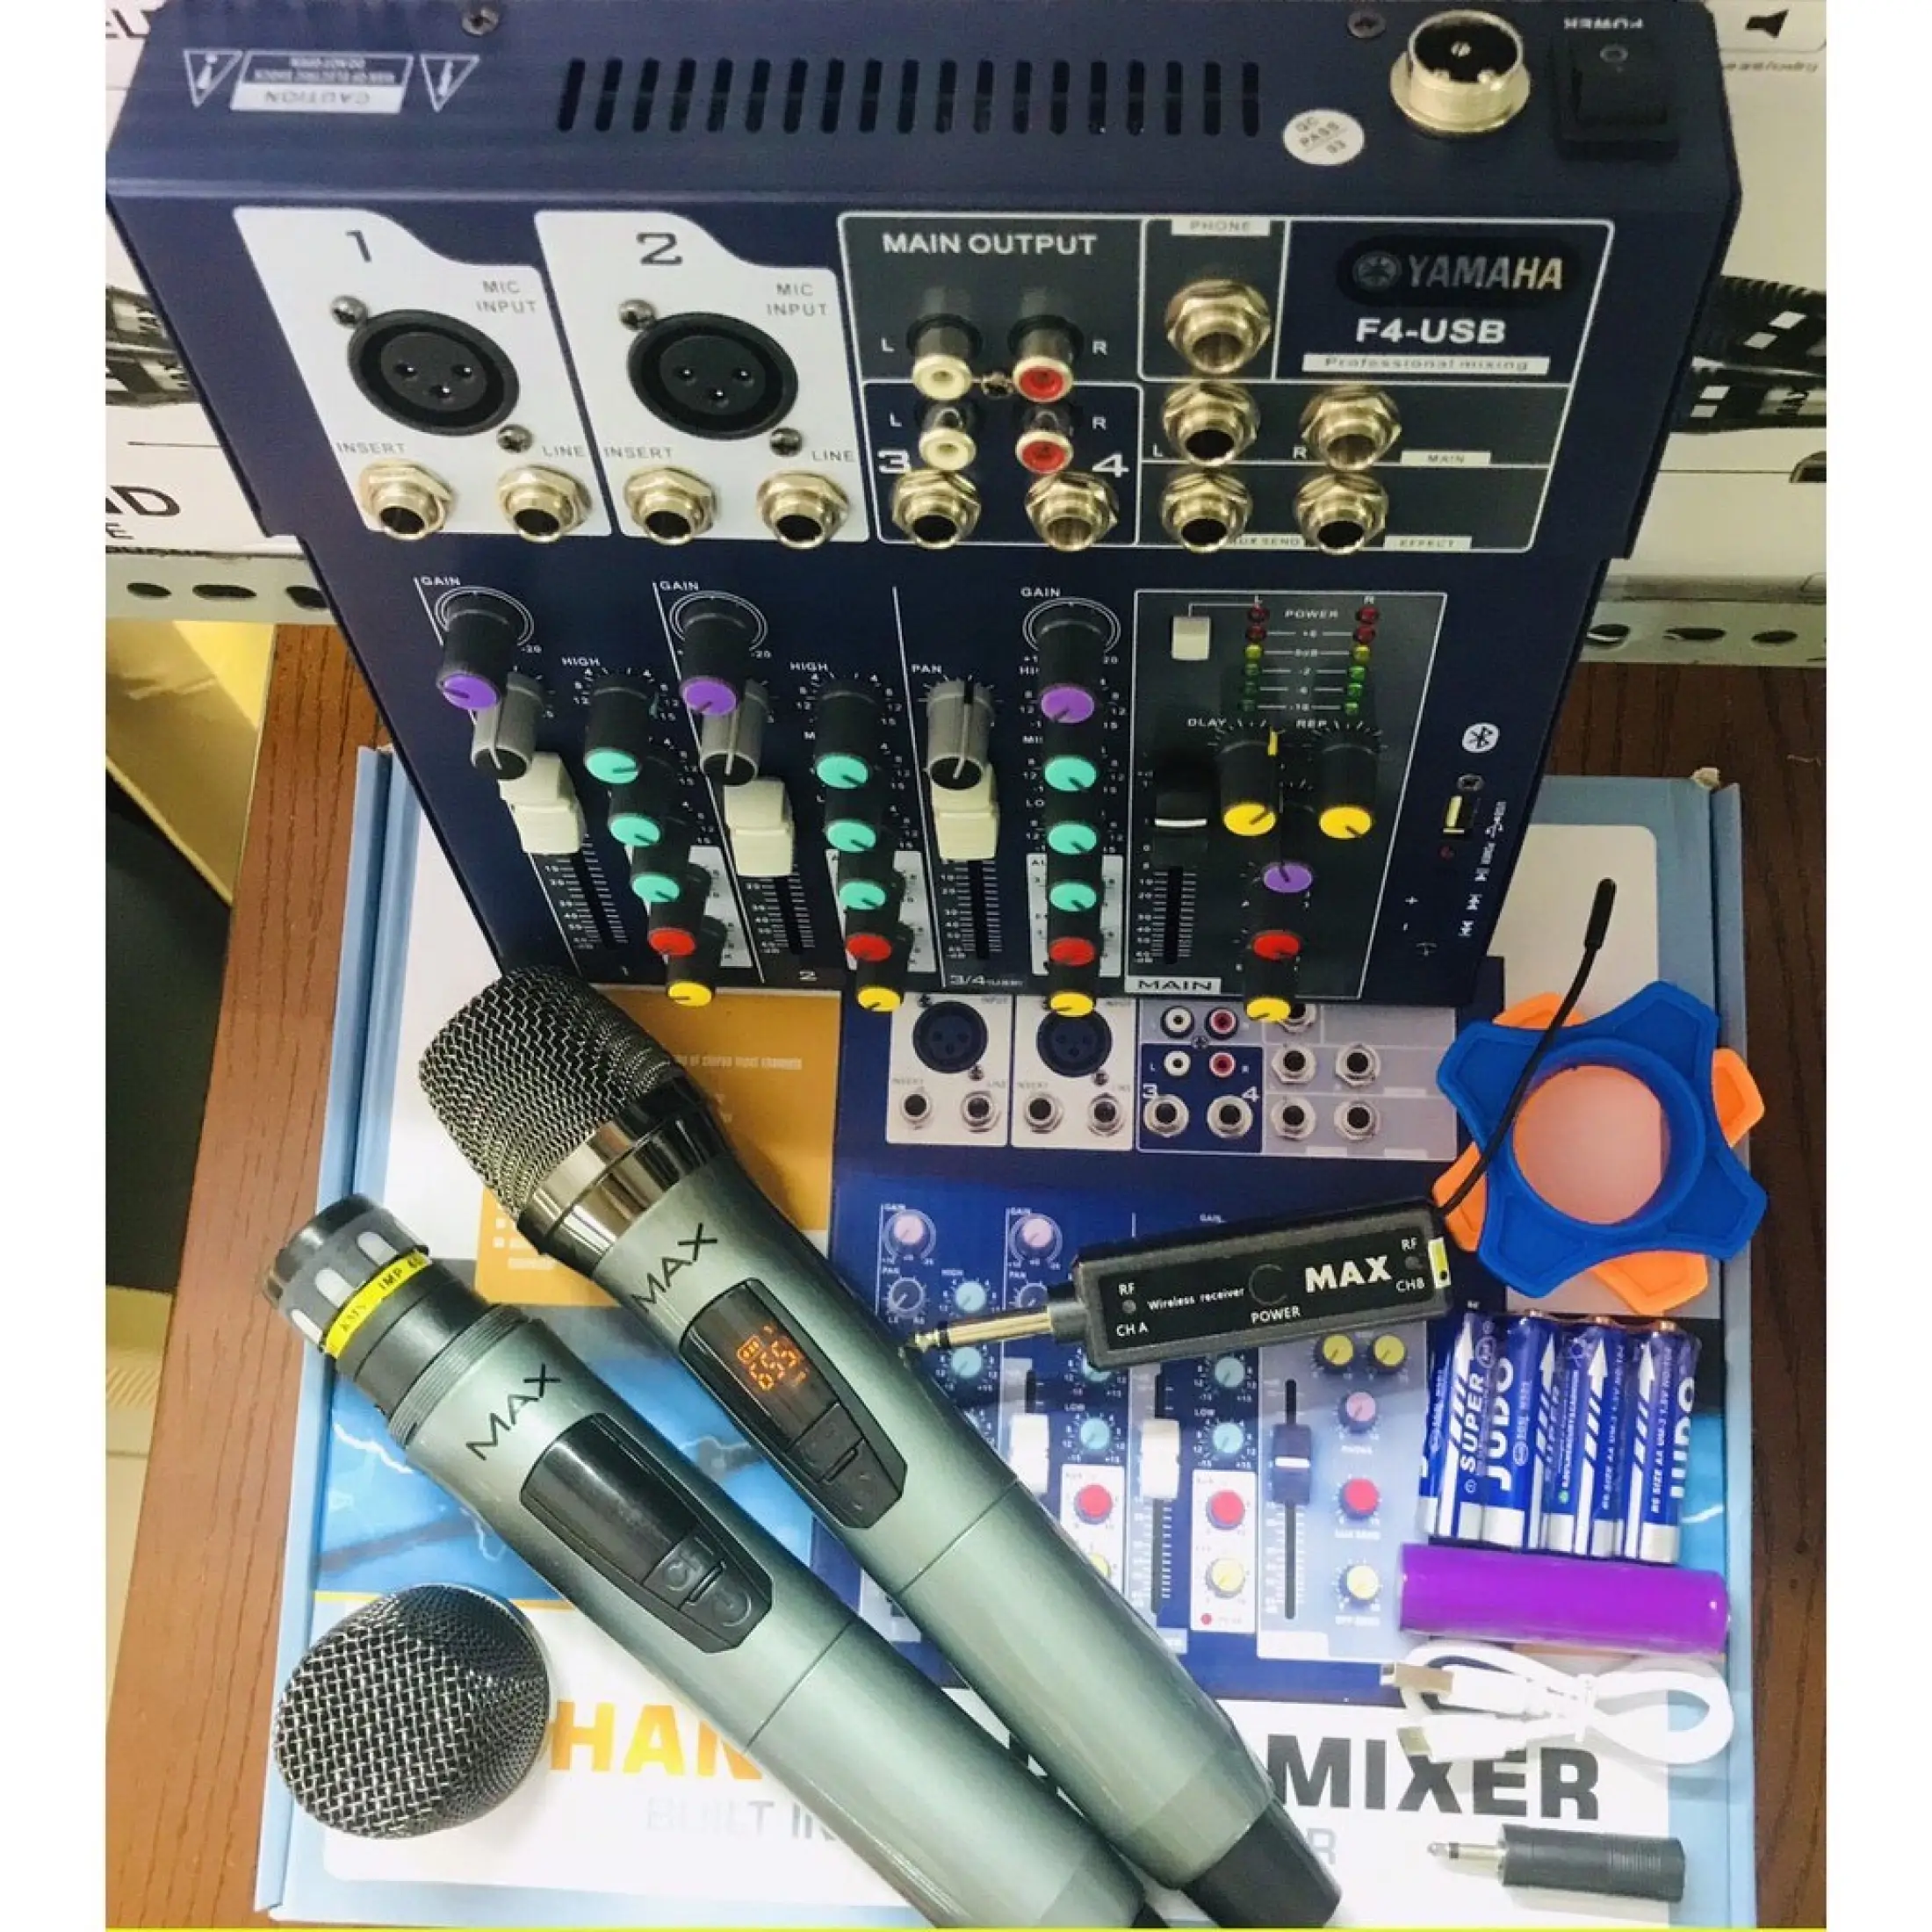 Trọn Bộ Thu Âm Mixer F4 Bluetooth Mixer Yamaha F4 + Micro Max39 Không Dây